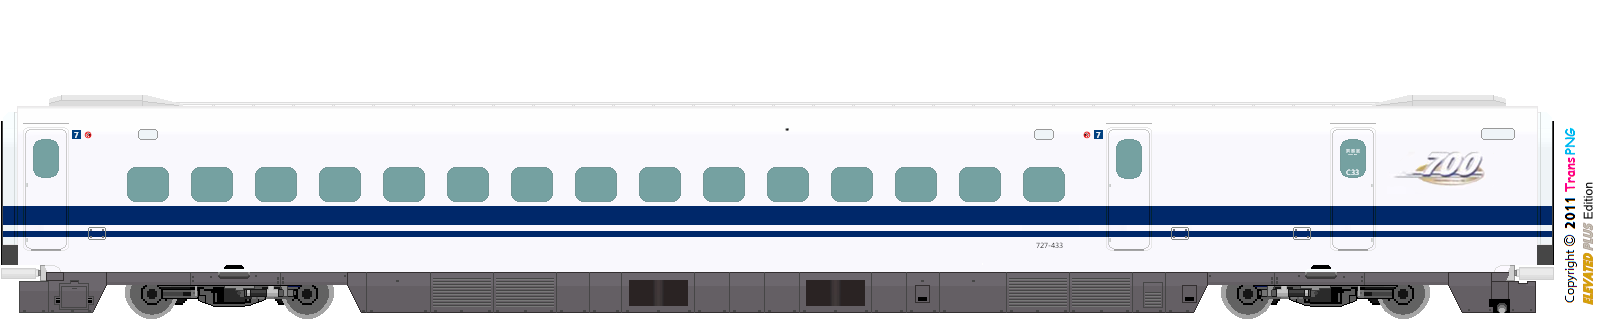 [9010] 東海旅客鉄道 52287586083_e1ab99bb44_o